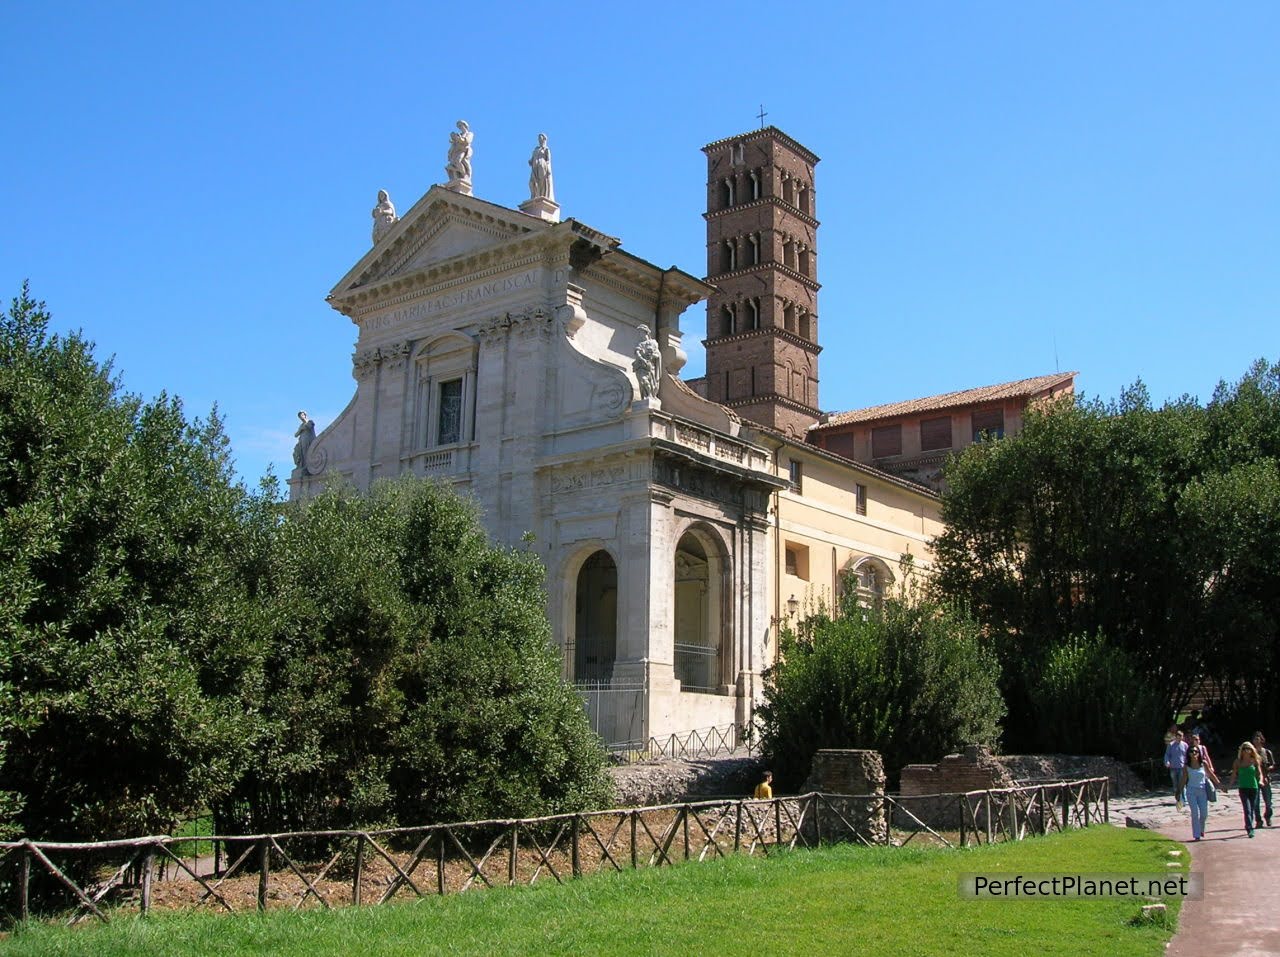 Basilica of Santa Francesca